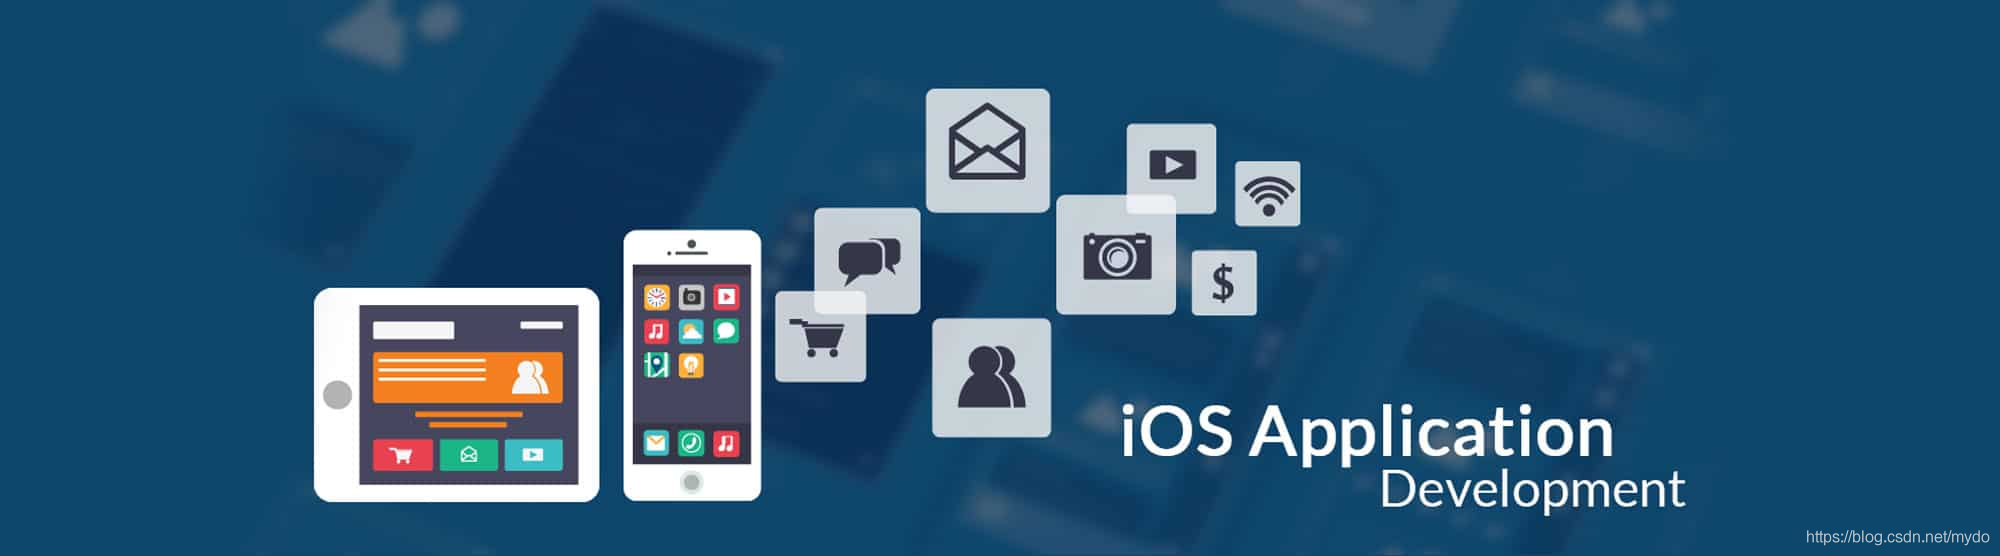 ios无法下载货币、苹果手机为什么不能下载钱包